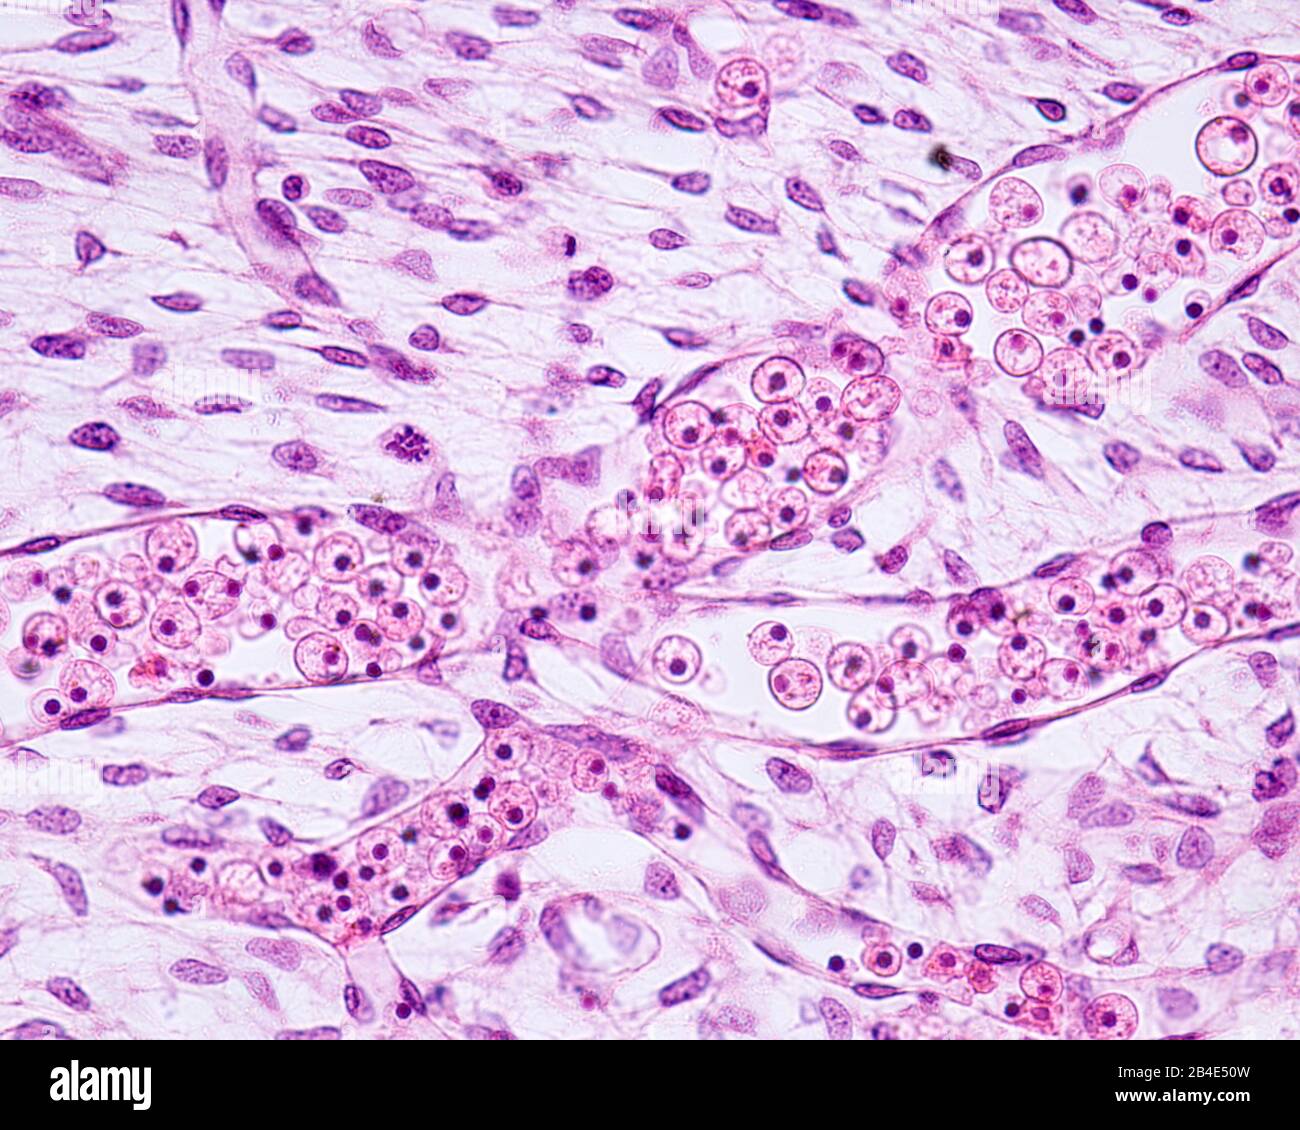 Blutgefäße in emonalem Gewebe. Die Gefäße sind von Endothel (einfachem Plattenepithel) gesäumt und enthalten im Inneren unreife, nukleierte Rotblut c Stockfoto